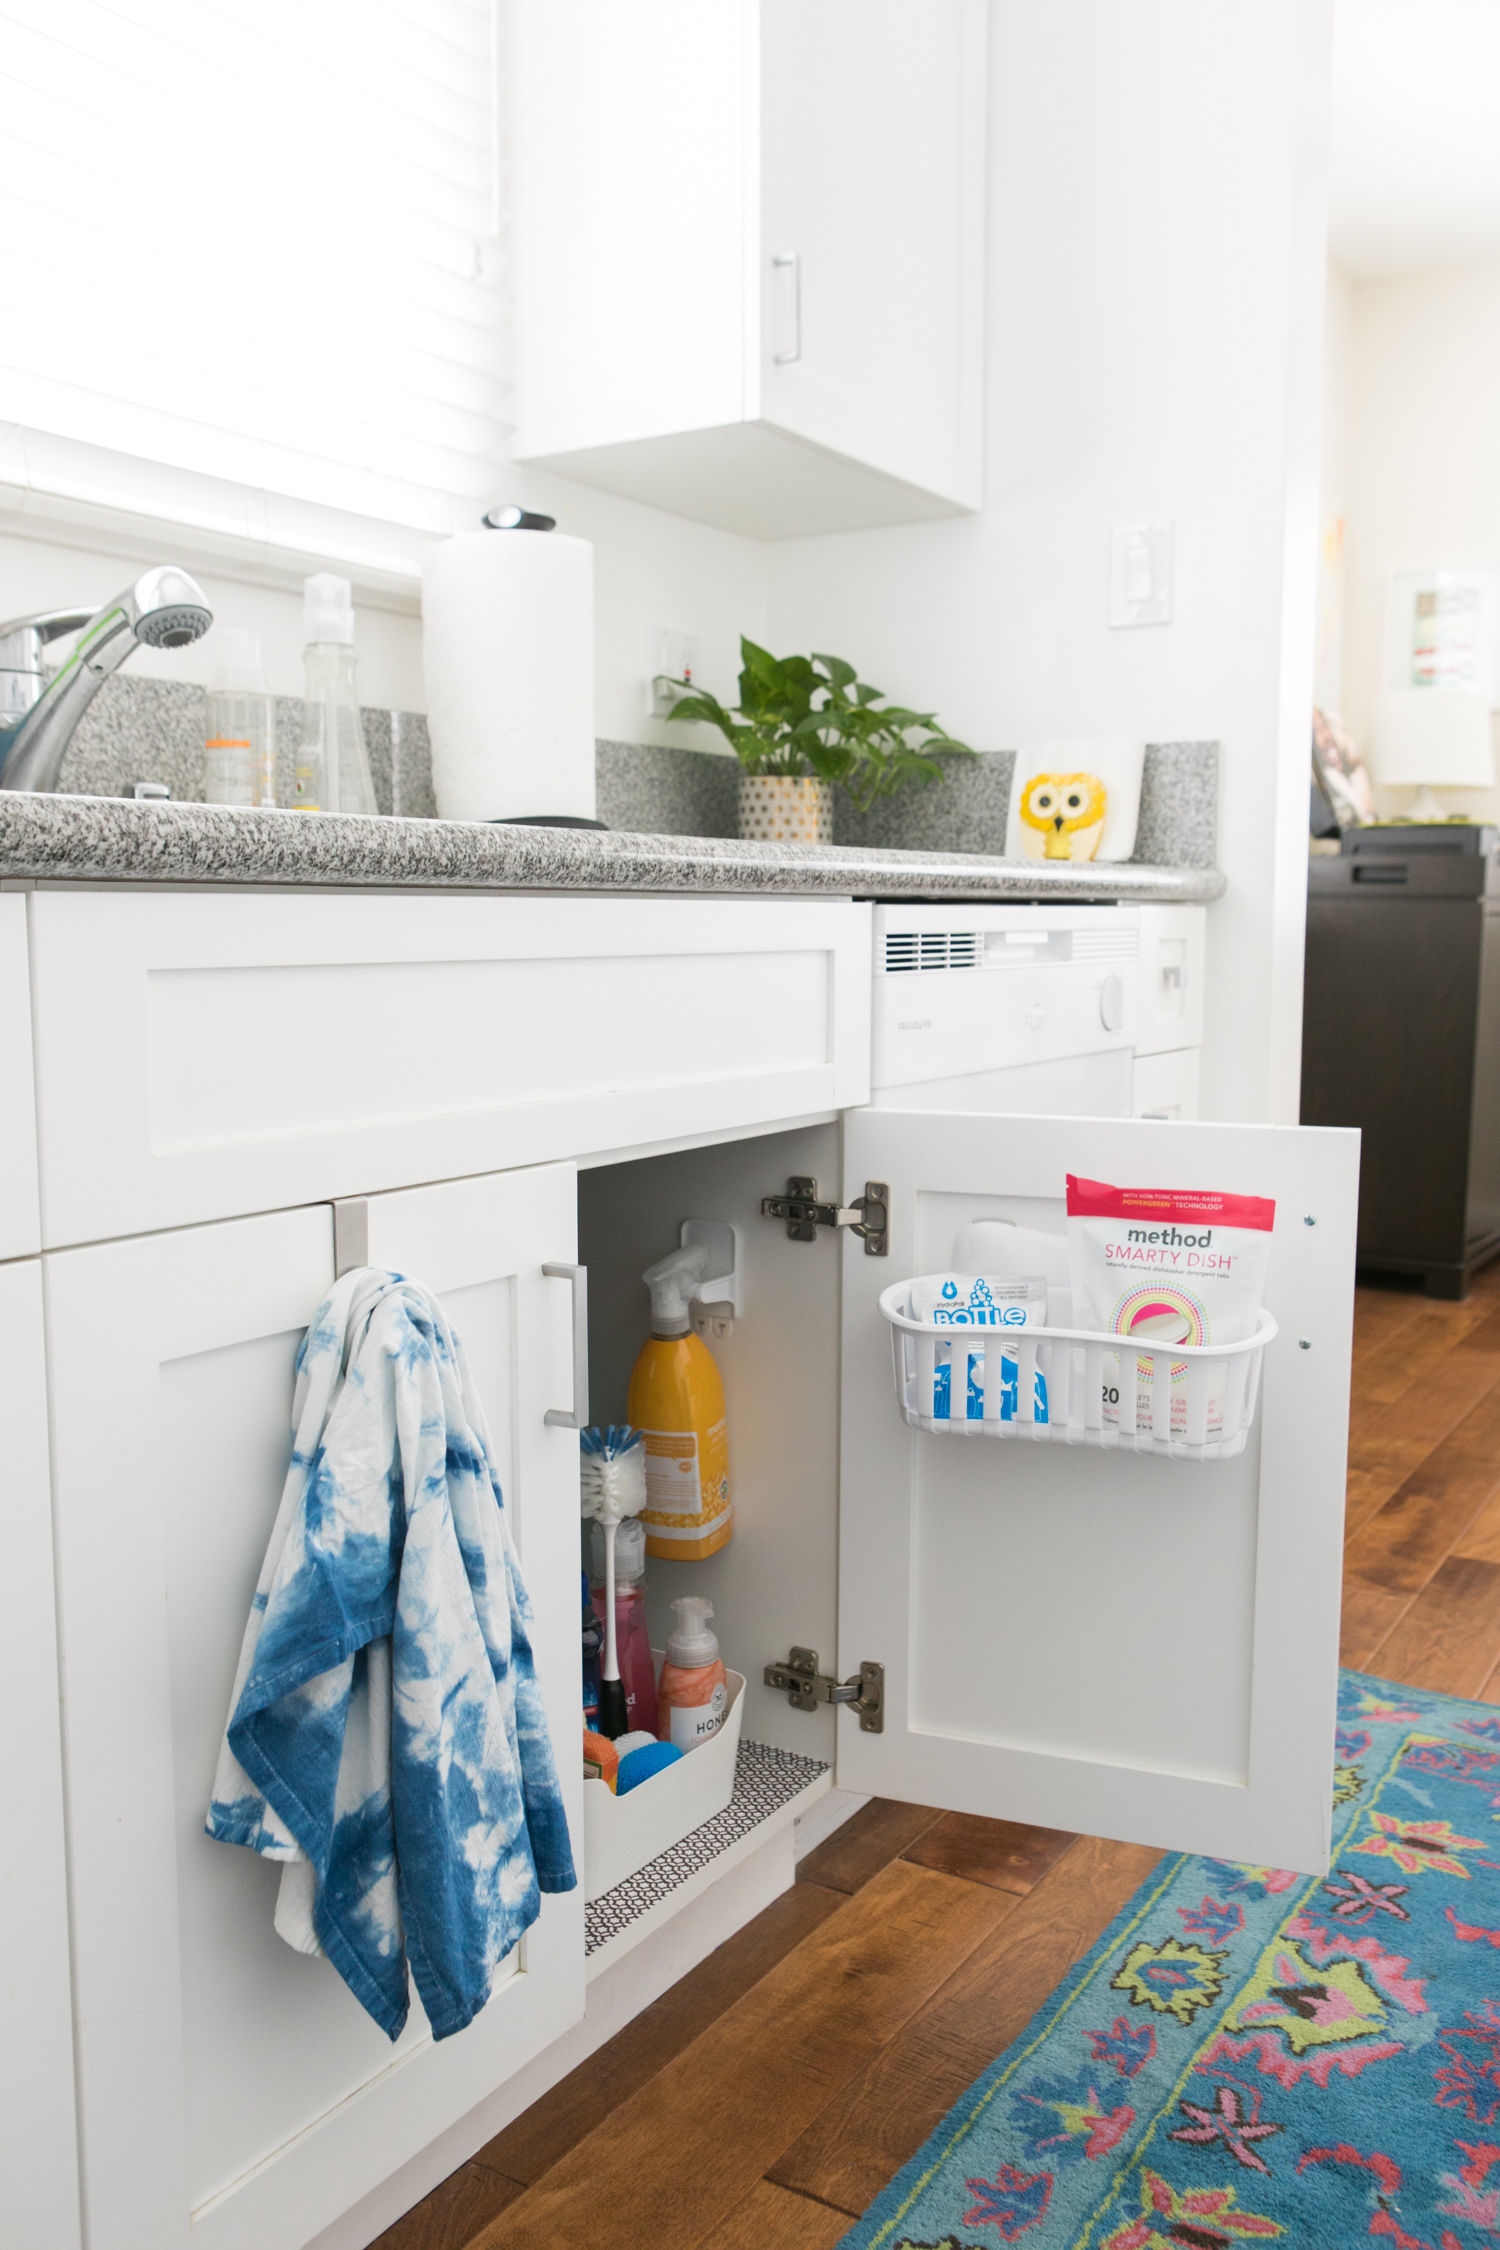 Lưu trữ tại tủ dưới của bồn rửa bát là một ý tưởng đơn giản giúp bạn kiểm soát tình trạng lộn xộn của đồ dùng,